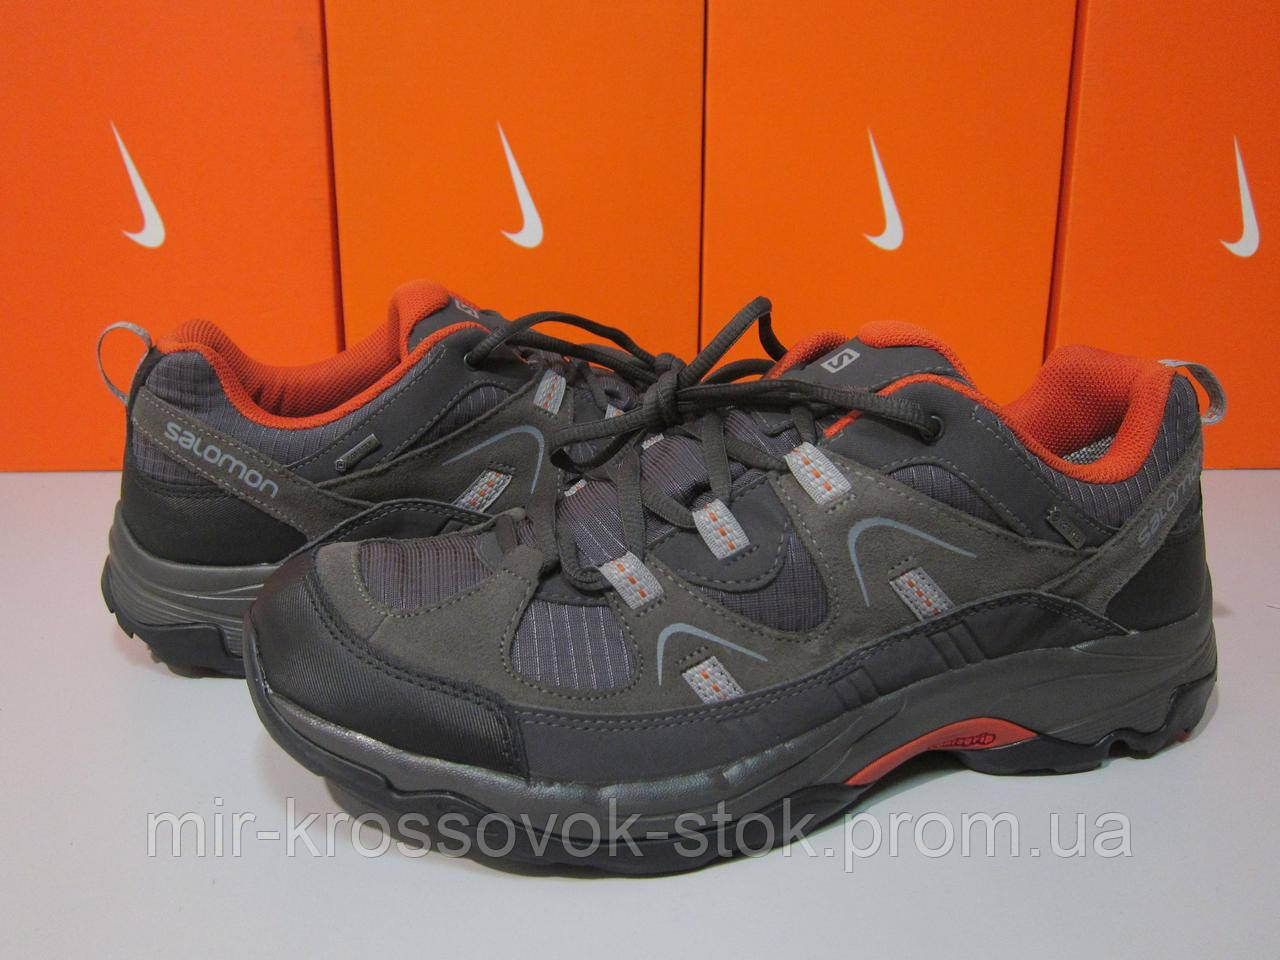 Трекінгові кросівки чоловічі Salomon 361674 LOMA GTX (оригінал), ціна 2100  грн - Prom.ua (ID#553581994)